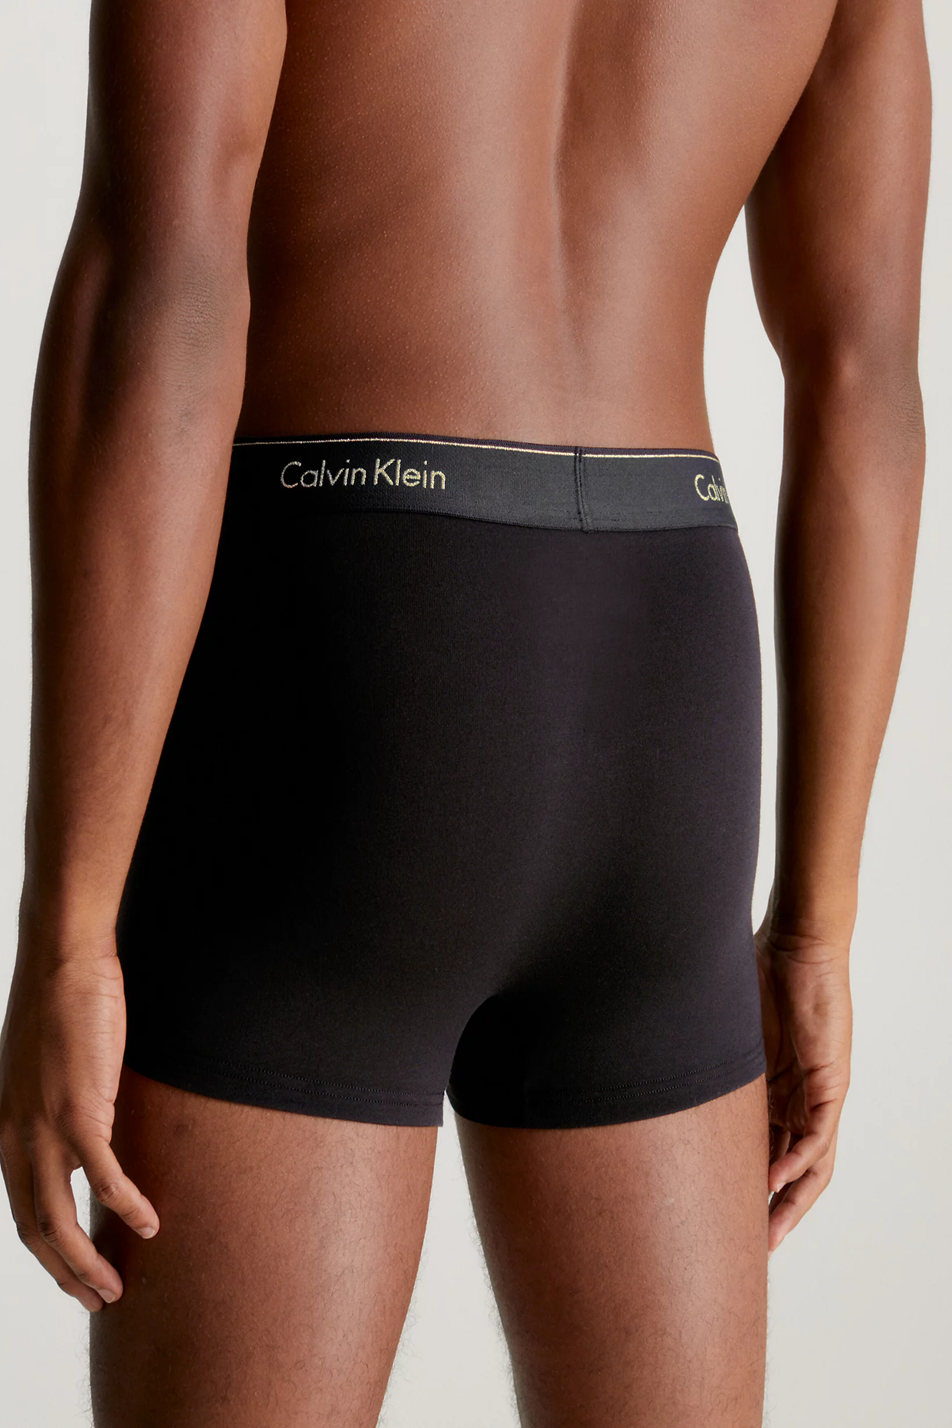 Calvin Klein 3 Pack Men's Cotton Stretch Trunk